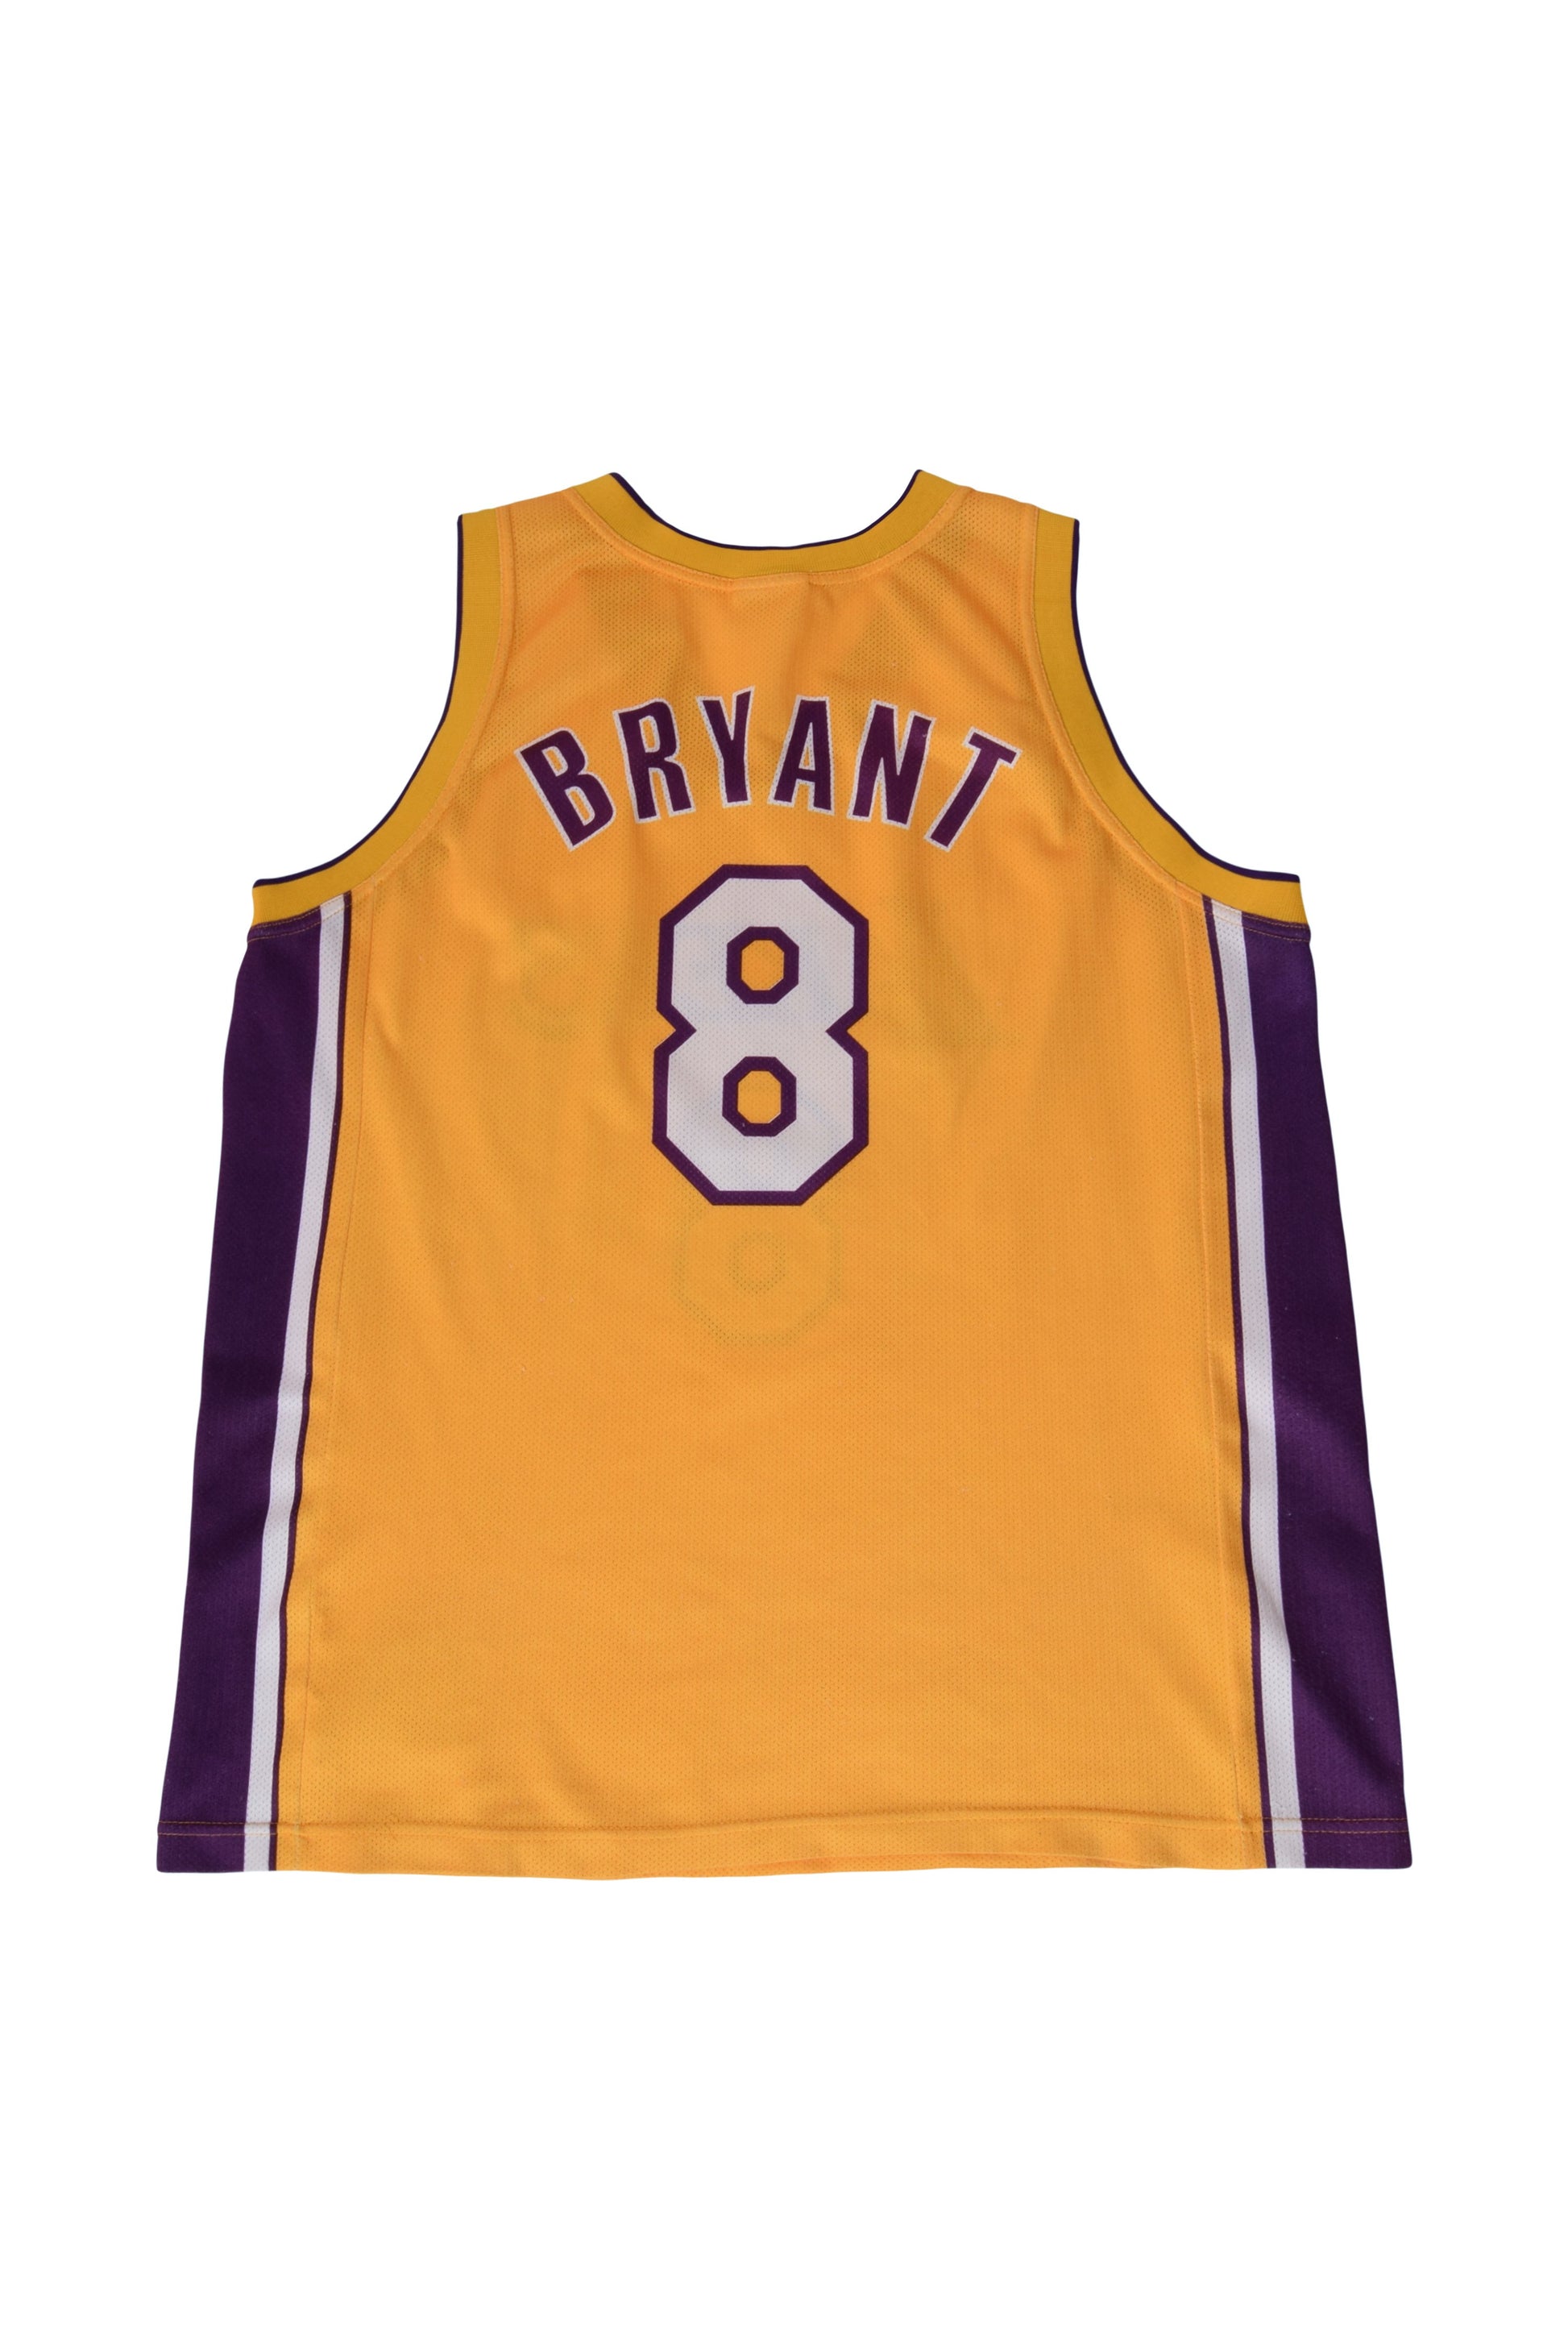 Buy Kobe Bryant Jersey Online In India -  India